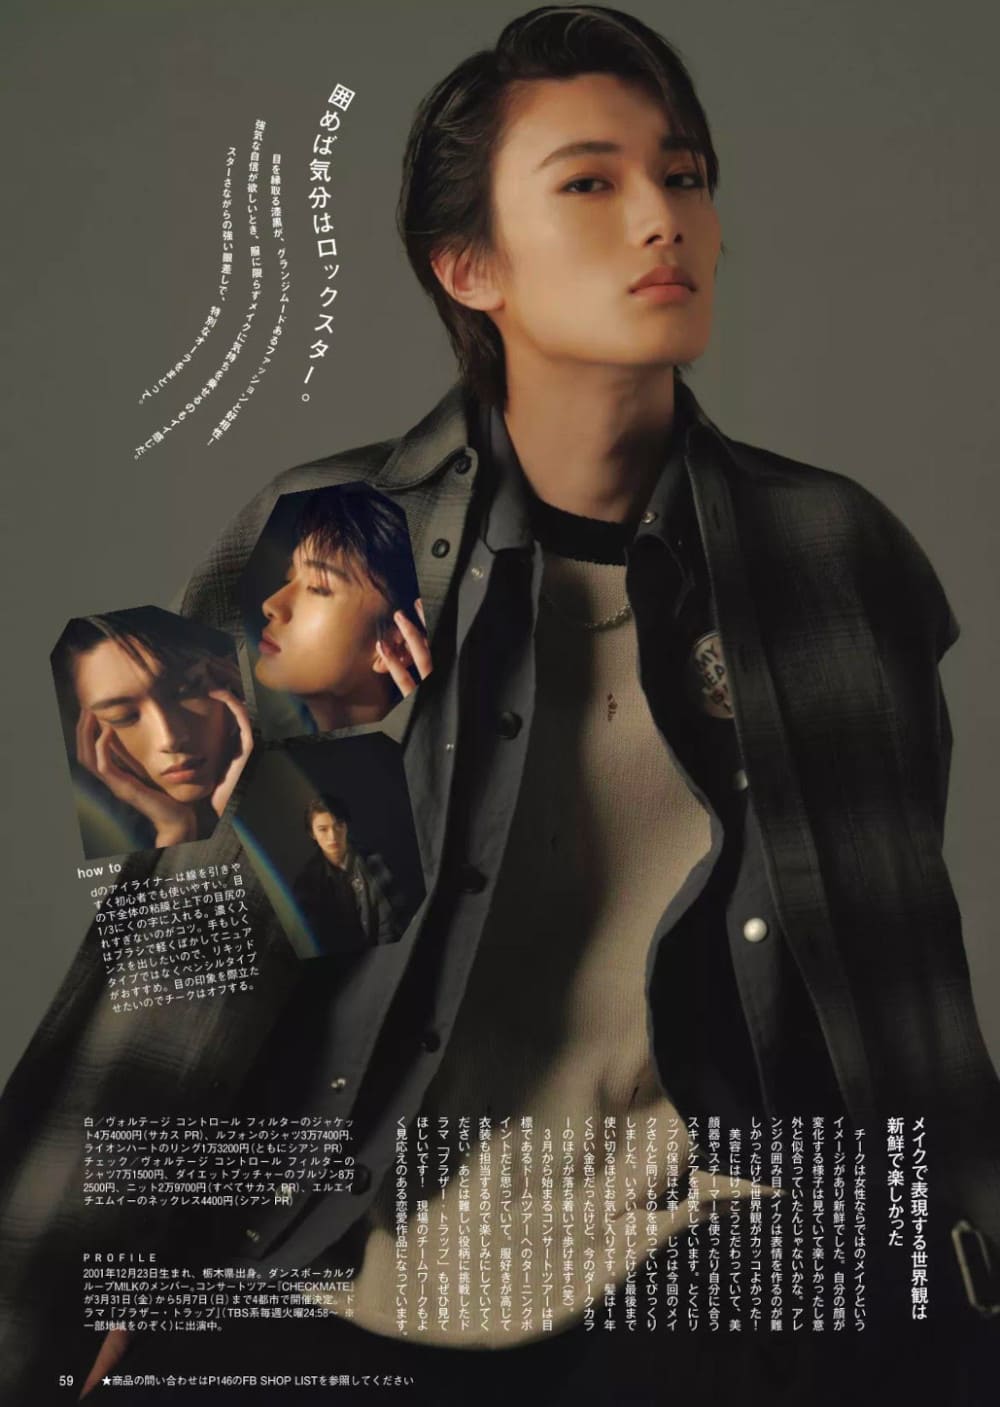 山中桑太郎 メンズファッション誌 FINE BOYS(ファインボーイズ) 3月号 掲載ページ LHME(エルエイチエムイー)のアクセサリーを着用 